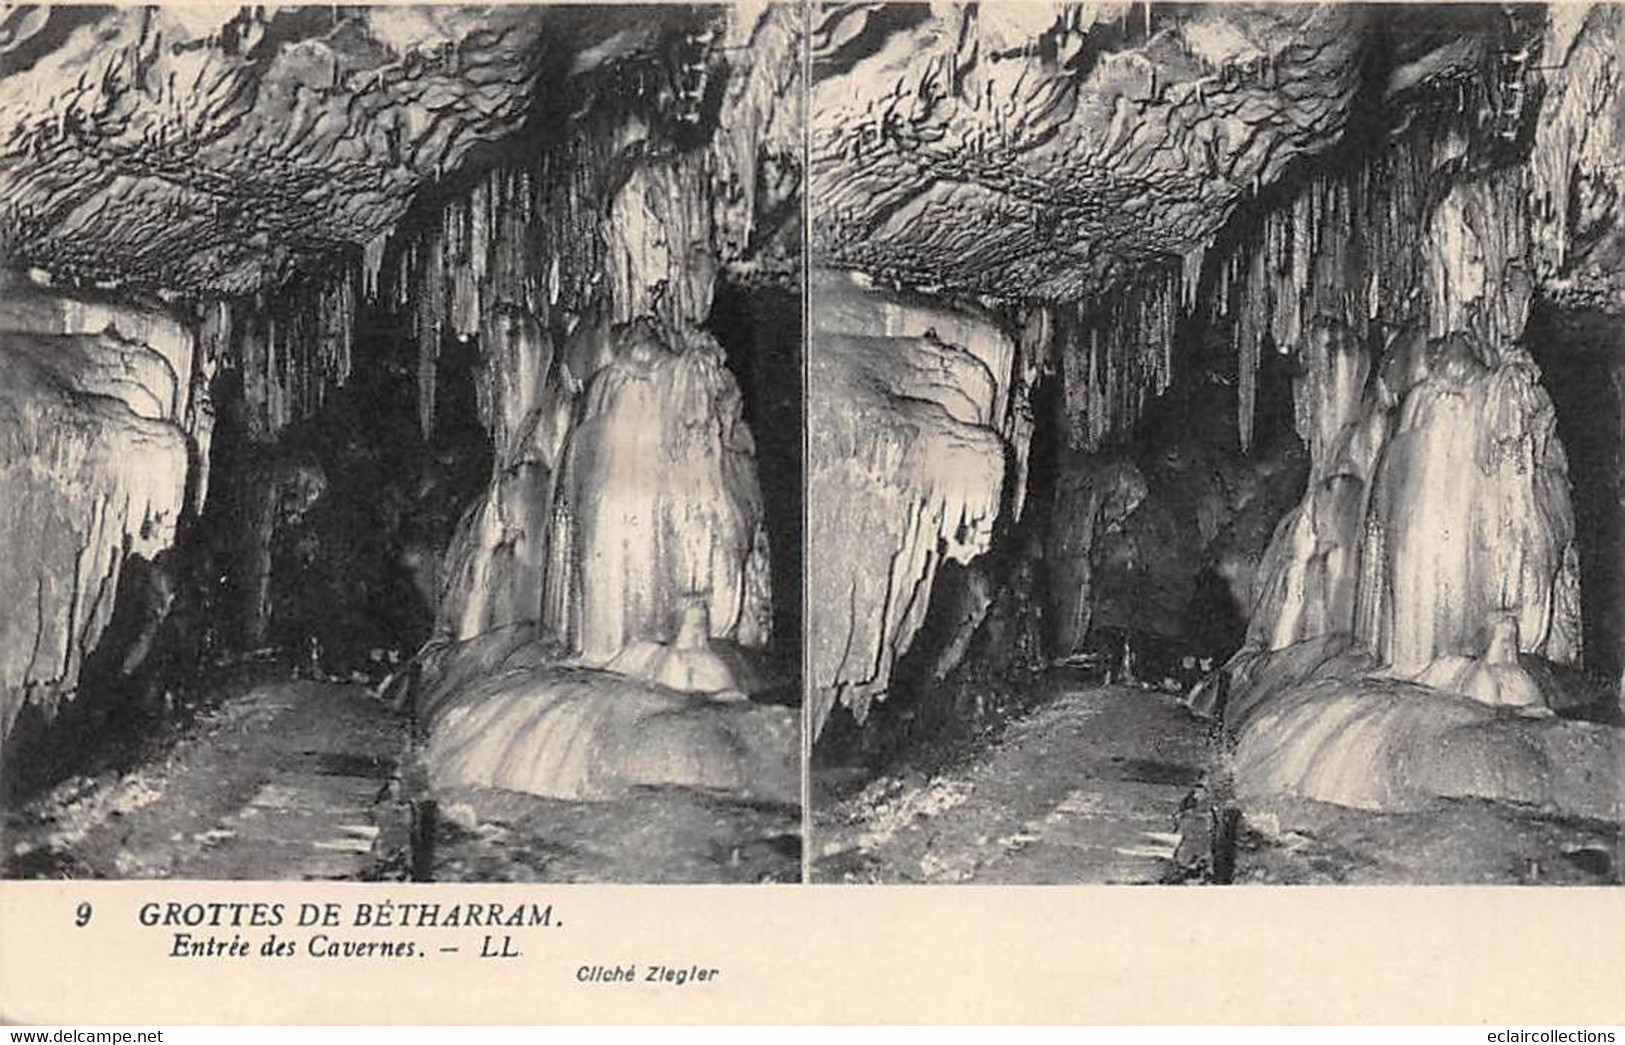 Cartes stéréos.   Lot de 44 cartes Grottes de Bétharram . Q.q  doubles .  Aperçu voir scan)